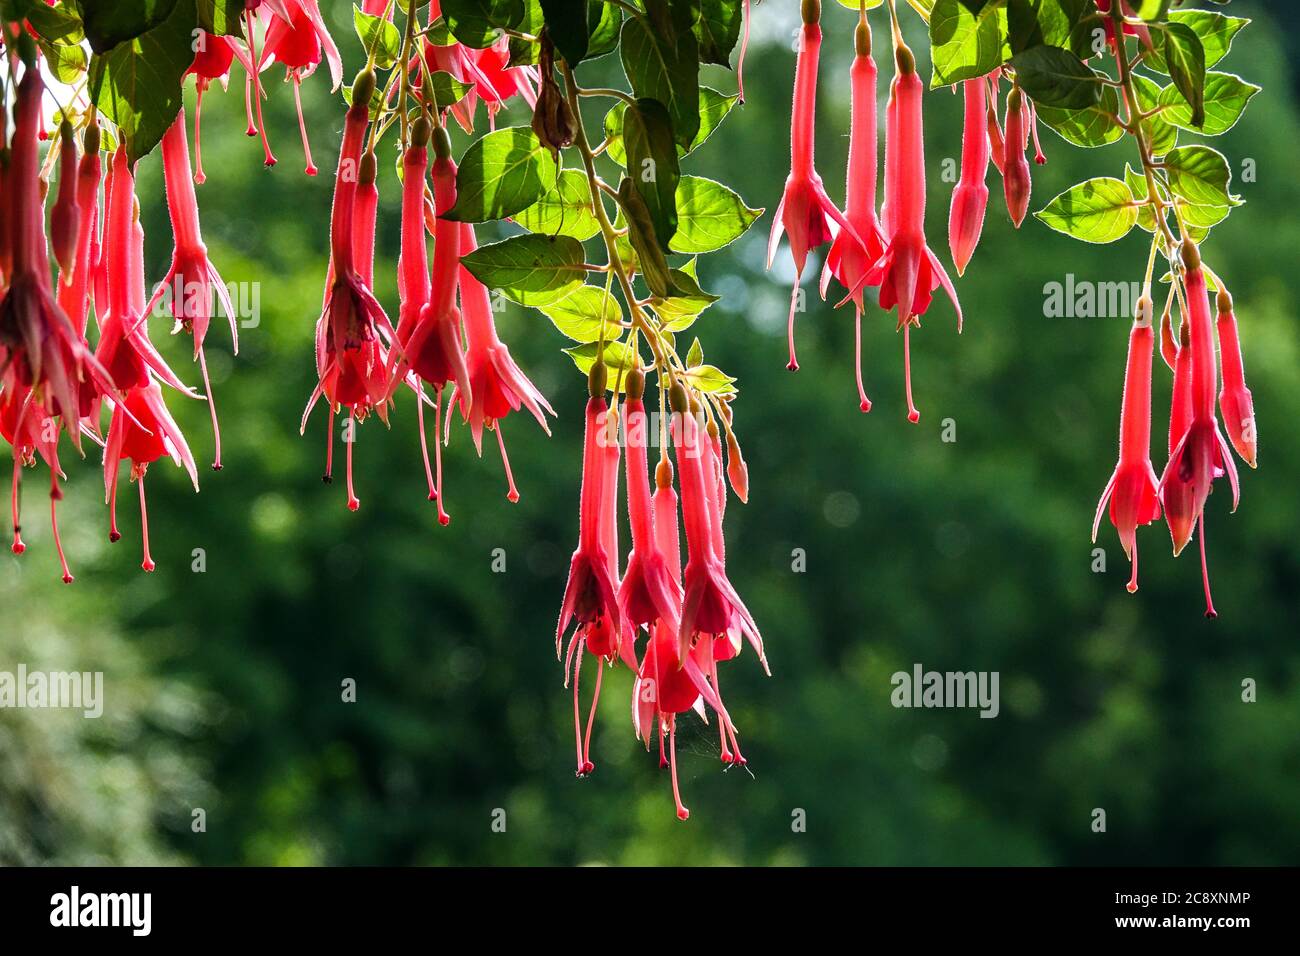 Trompette rouge fleurs Fuchsia 'Trumpeter' plante suspendue fleurs tubulaires rouges Banque D'Images